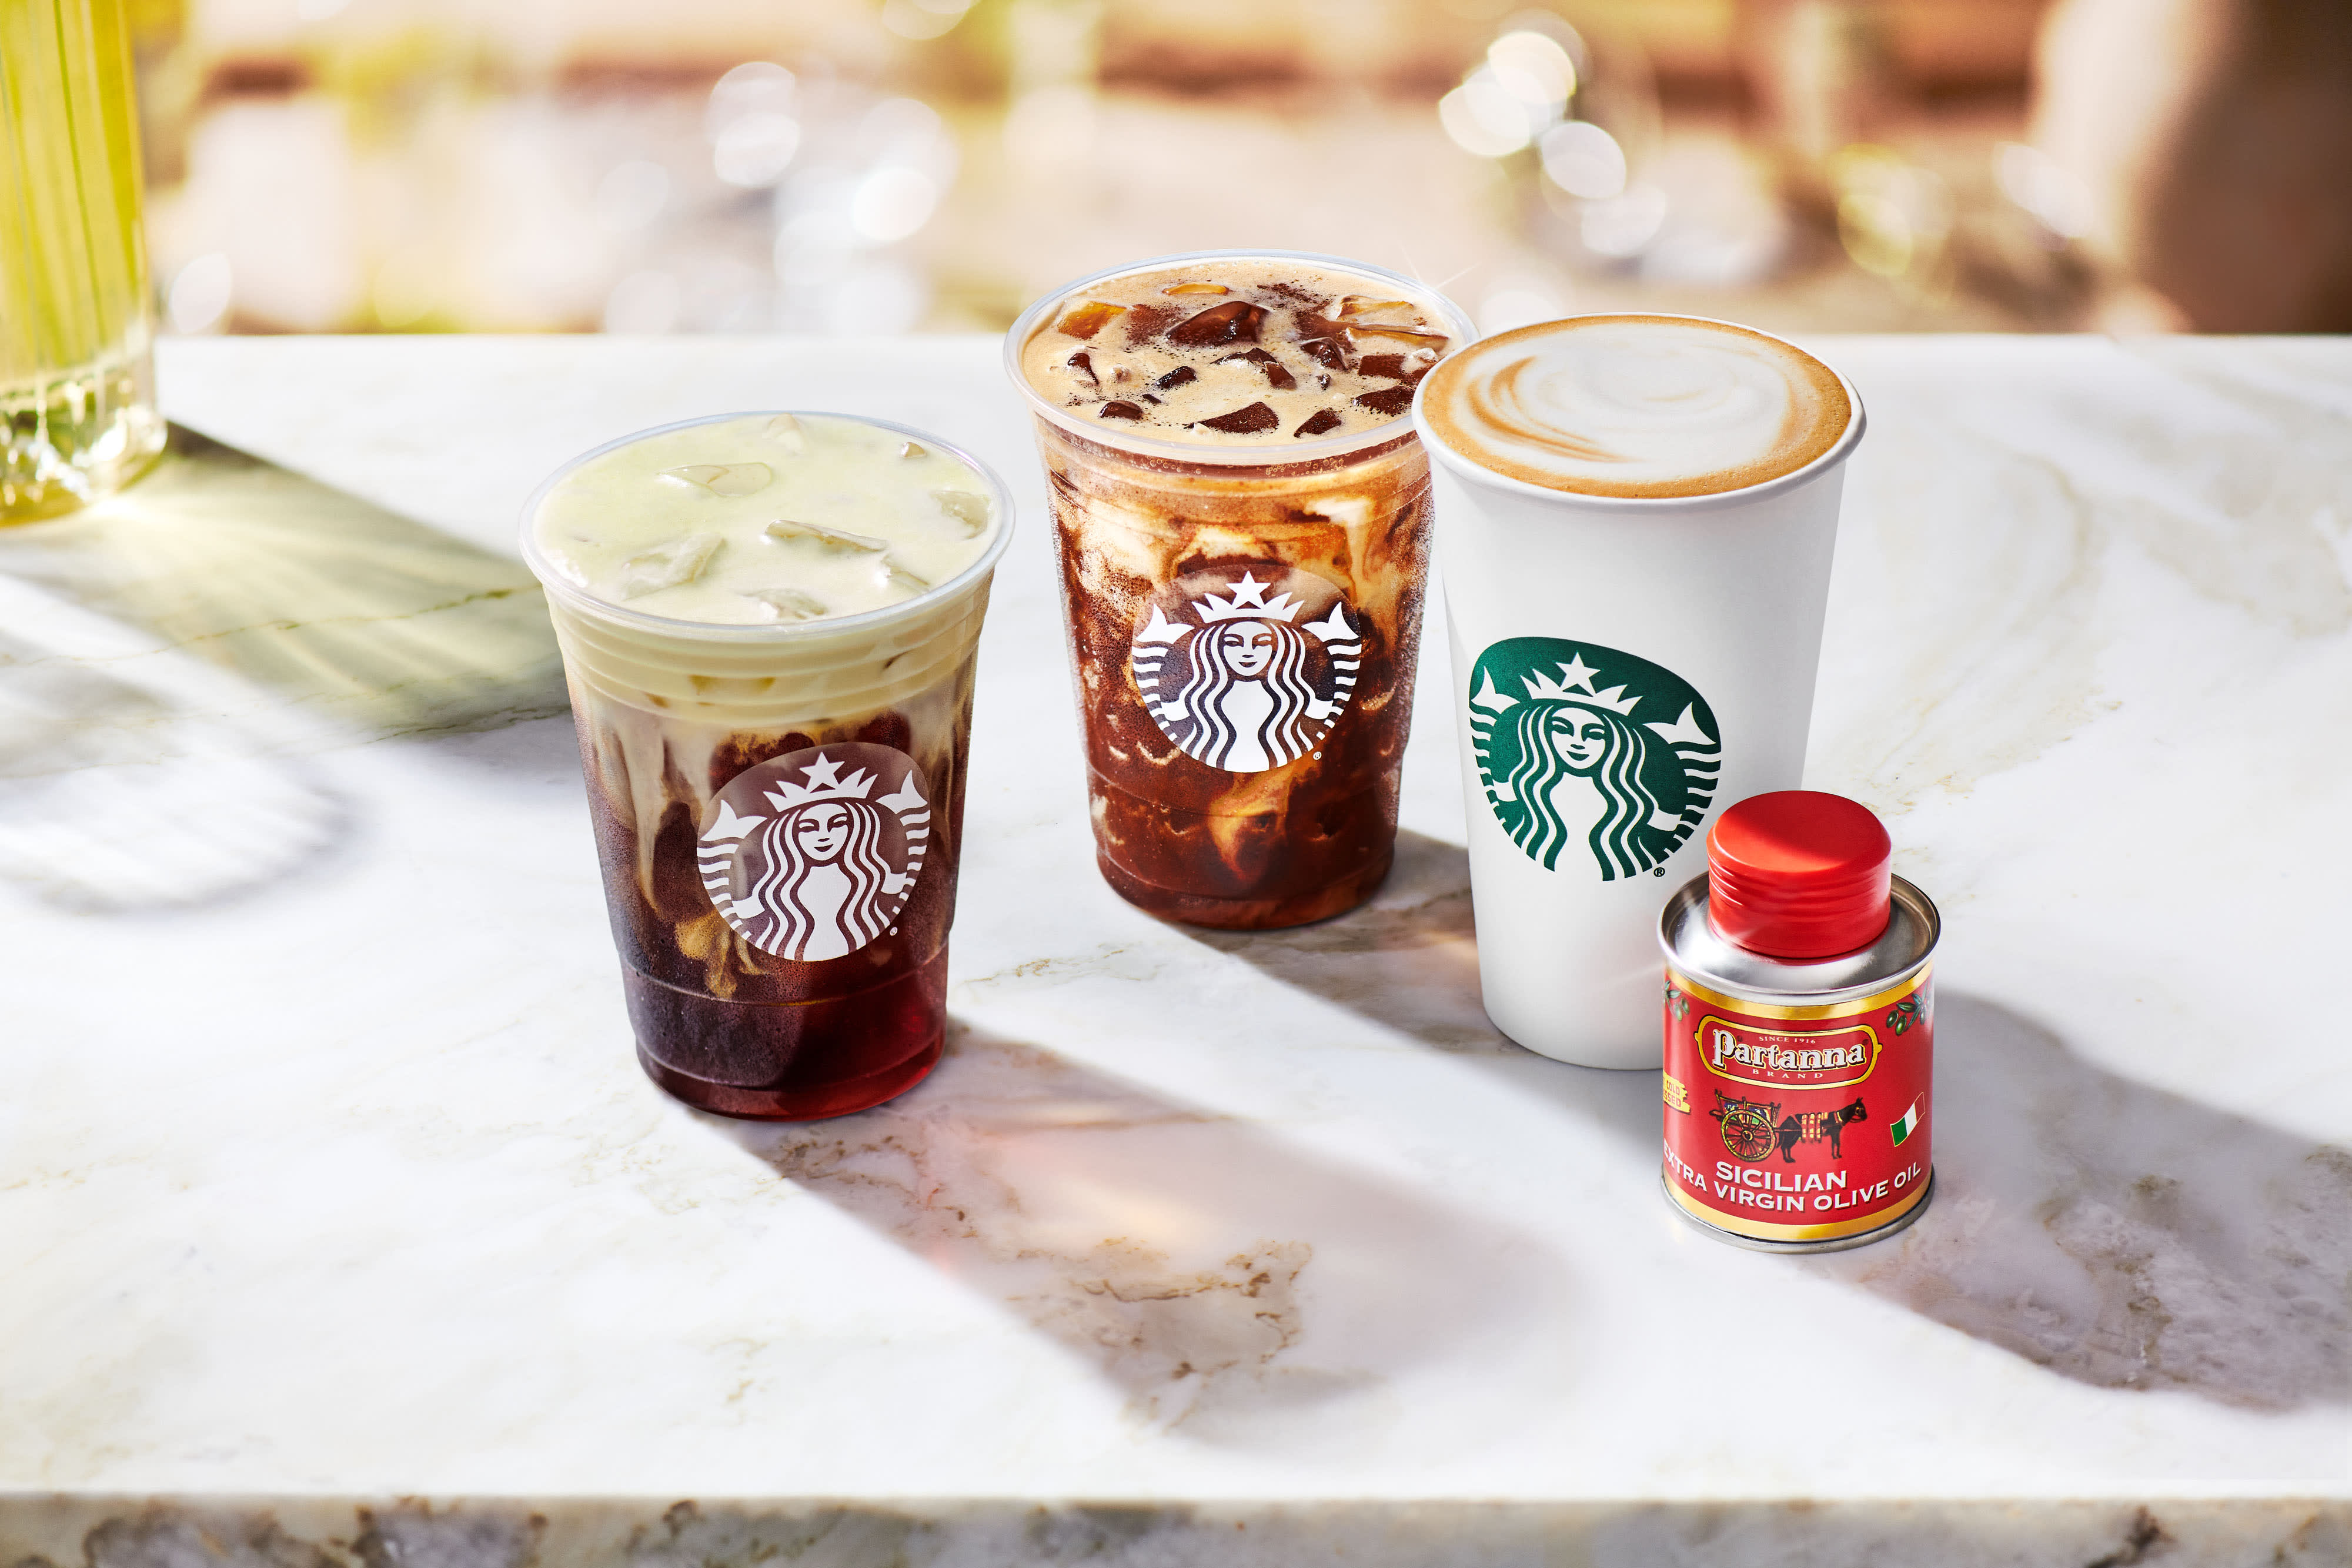 Starbucks olive oil coffee debuts in U.S. this week